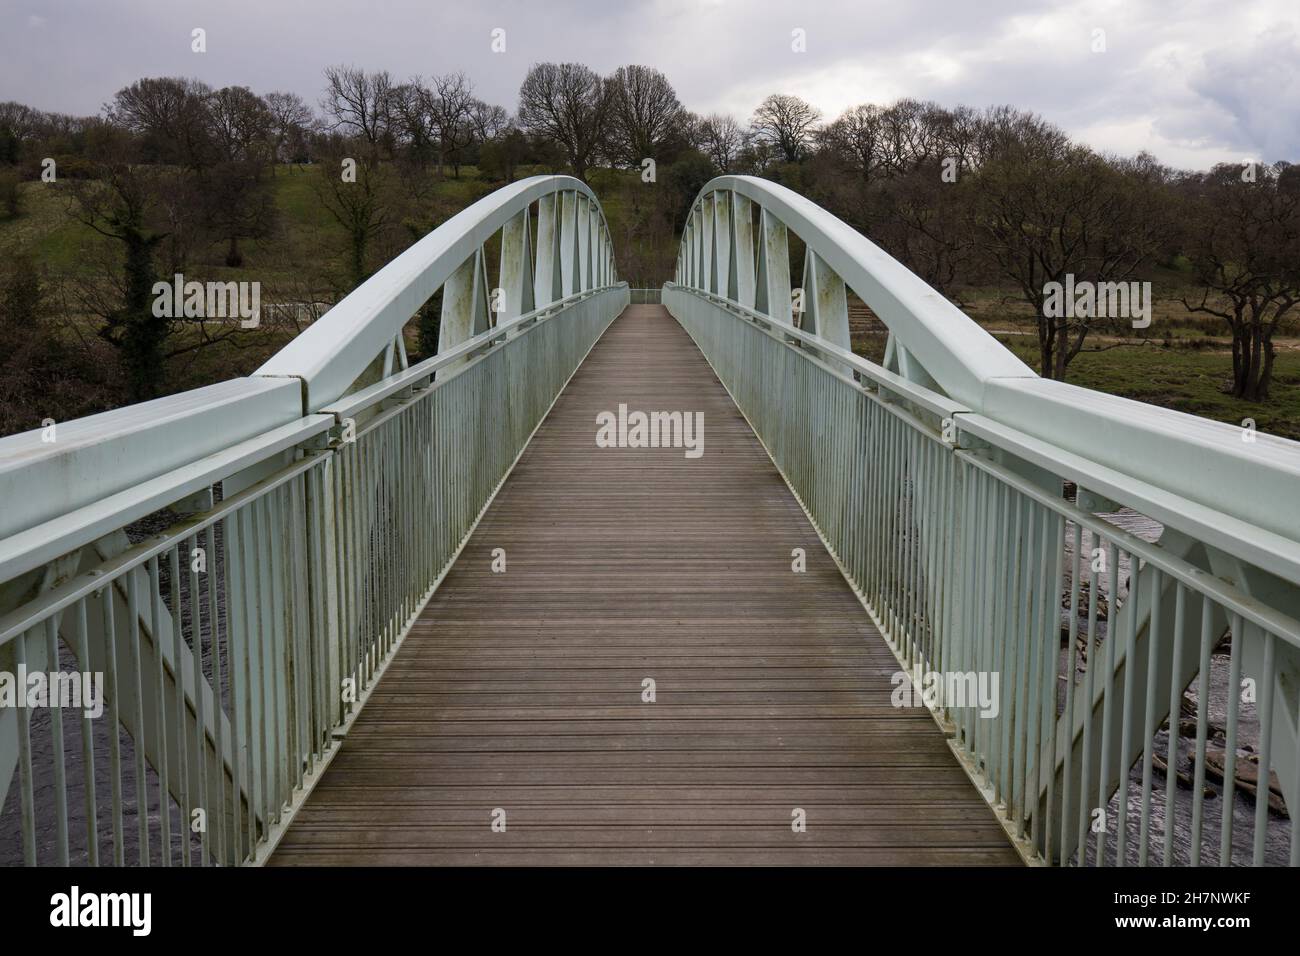 Ponte pedonale Dinkley che attraversa il fiume ribble vicino al verde hurst. Passerella metallica simmetrica Foto Stock